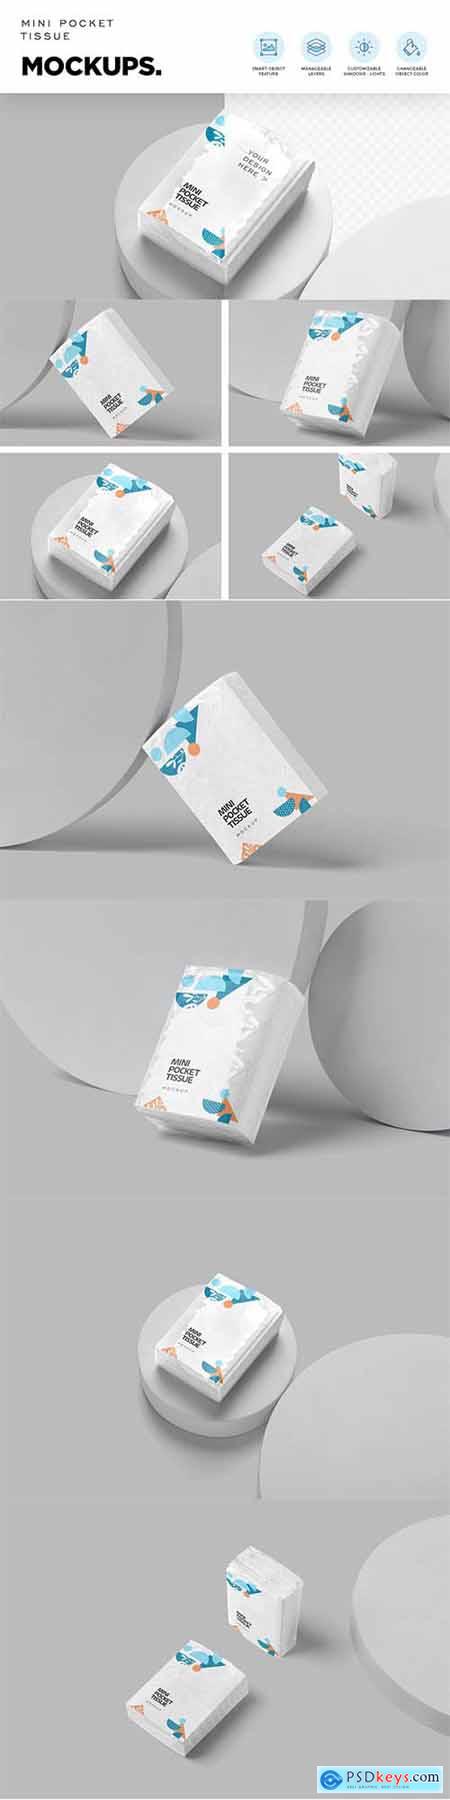 Pocket Tissue Pack Mockups 6859920